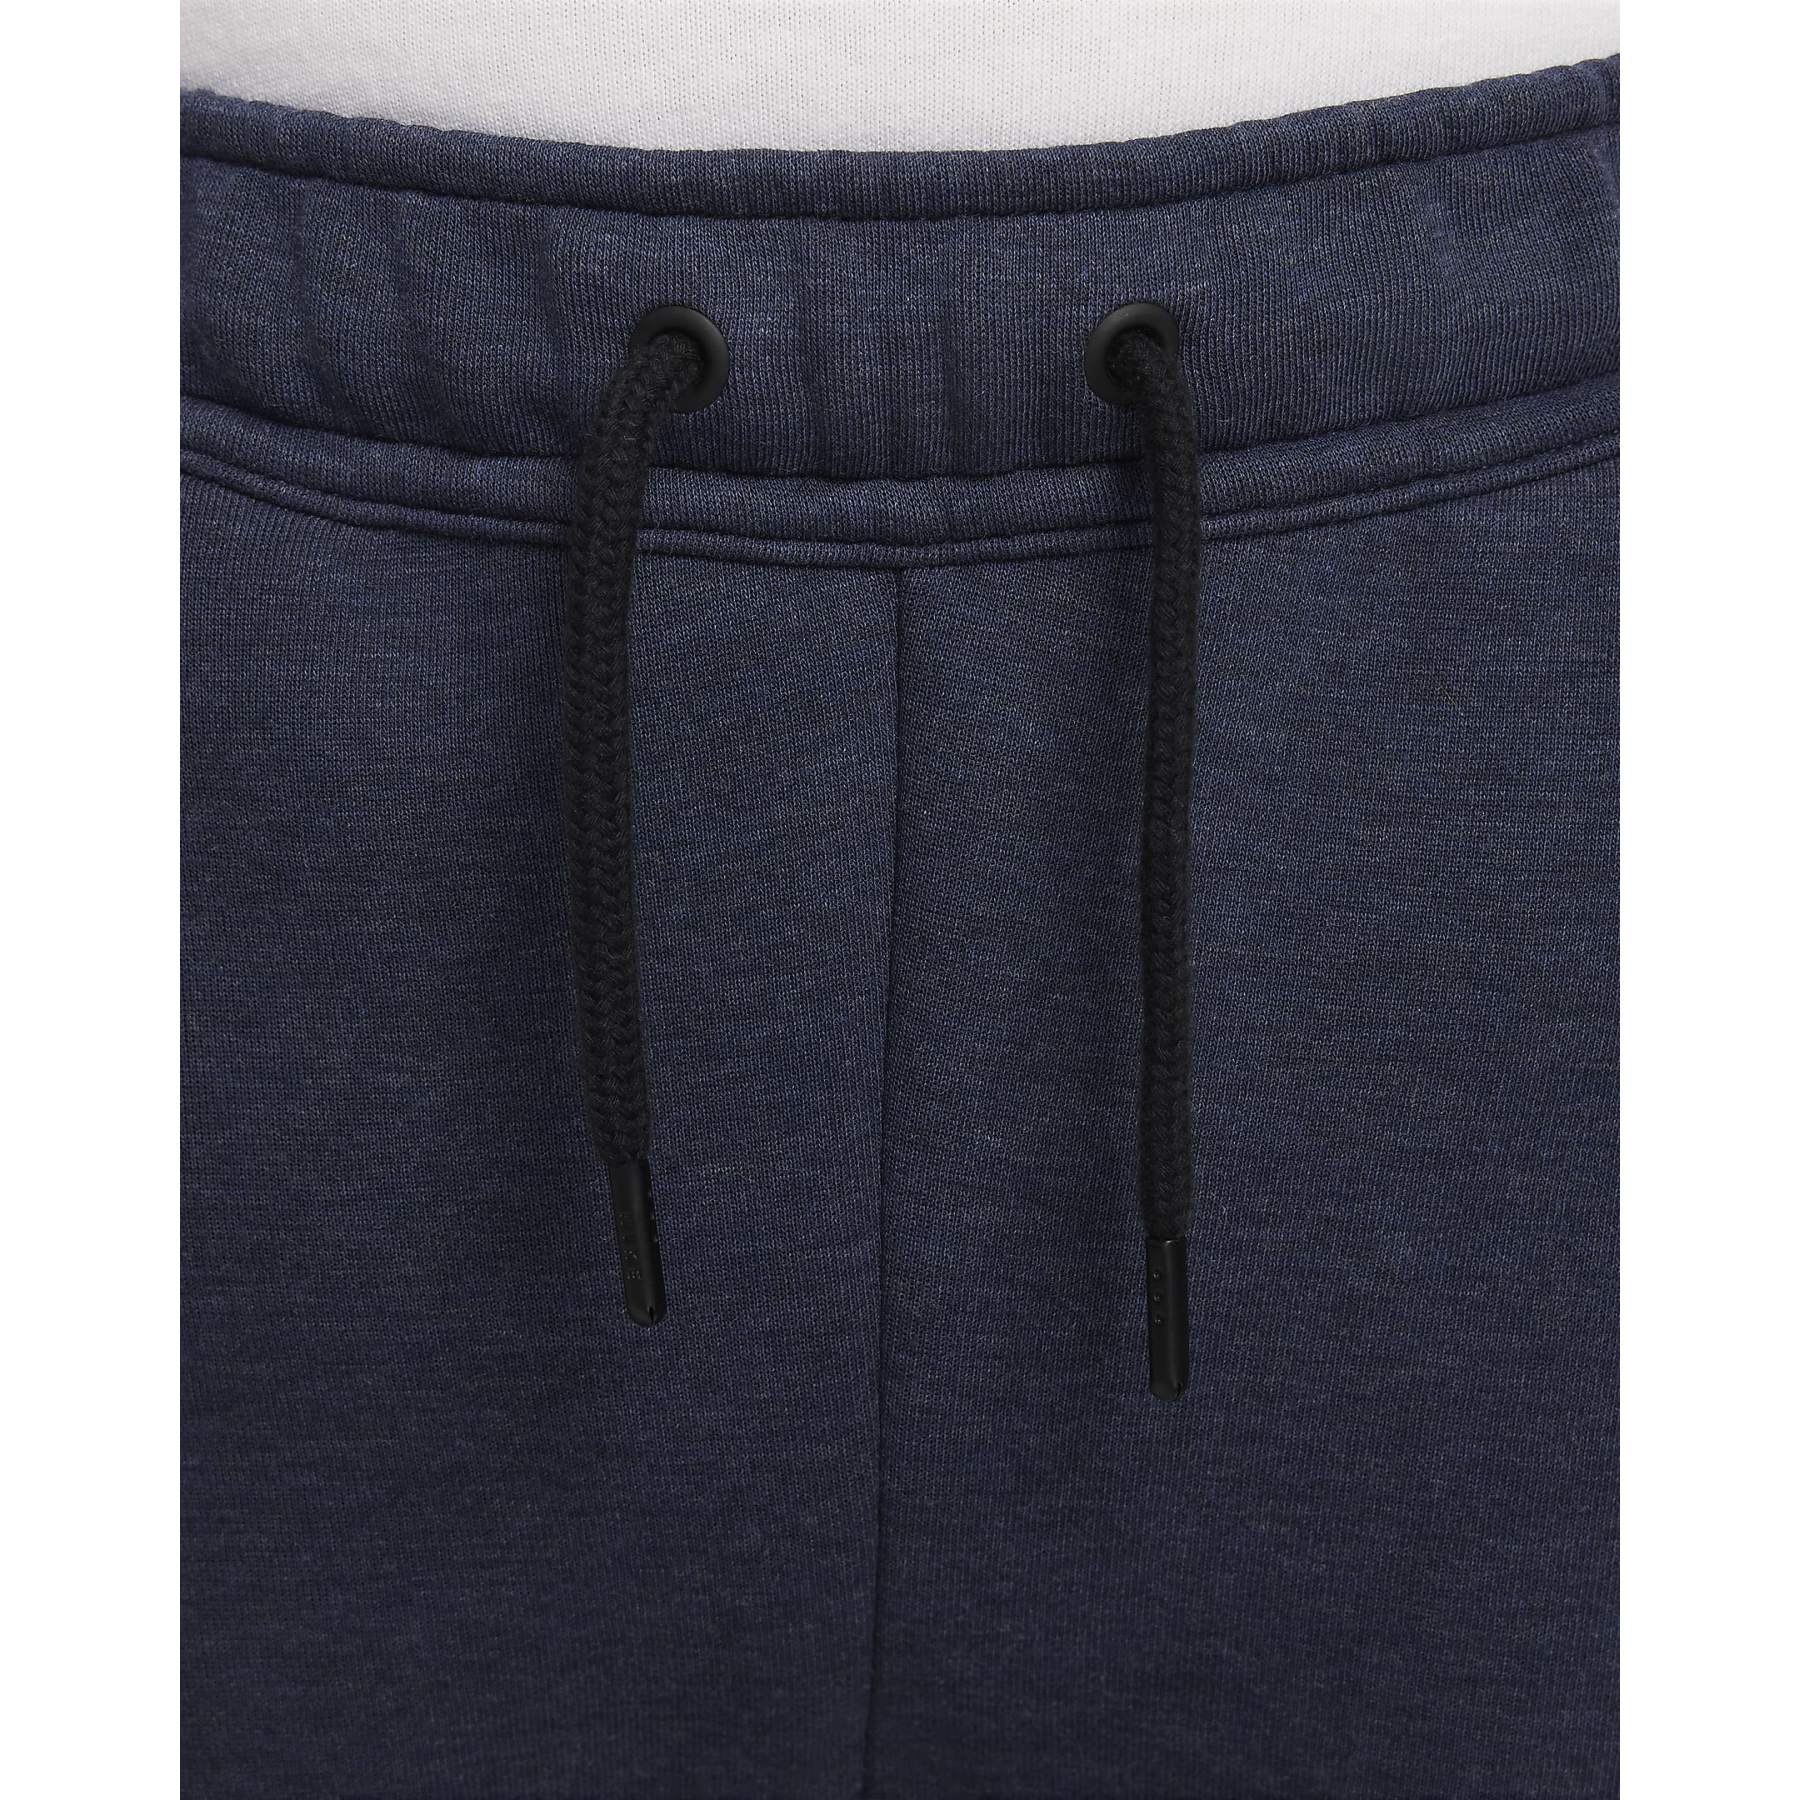 Pantalon Nike Sportswear Tech Fleece pour enfant - Noir - FD3287-010